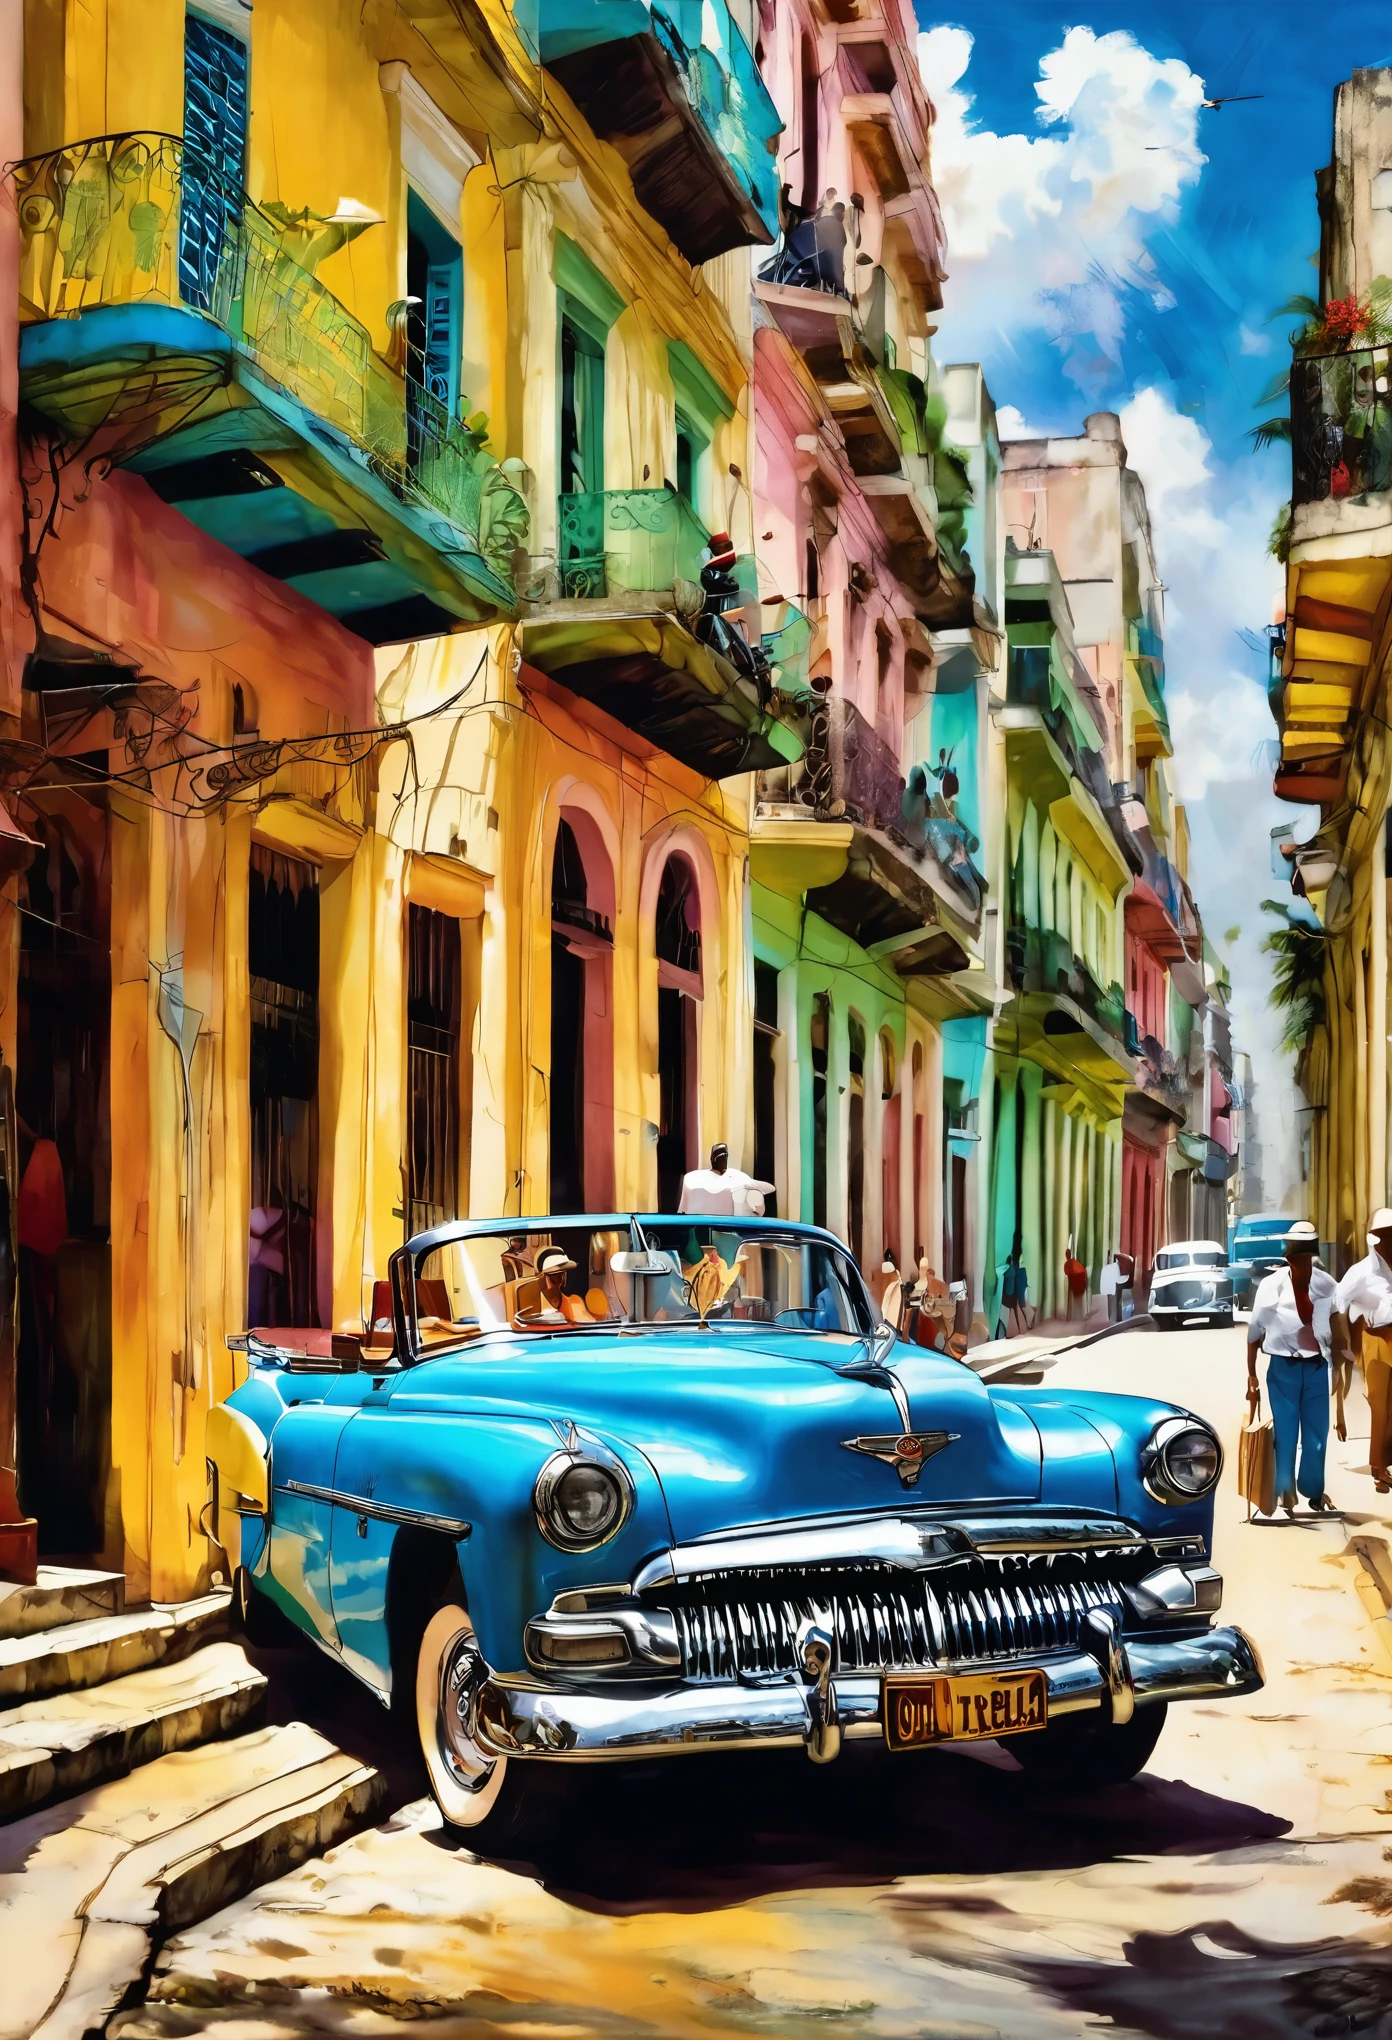 (Эффект Тиндаля Искусство Кубы Искусство Гаваны Кубинское искусство холст Печать Гаваны Гавана:1.5), Петр Ябонски,(( Красивый старинный автомобиль, вид сзади:1.5, на заднем плане столы и стулья в колумбийском баре с людьми, Тепло, счастливая атмосфера)), видно сзади, задняя сторона, Лучшее качество, шедевр, Представительская работа, официальное искусство, Профессиональный, Очень сложная детальная, 8К